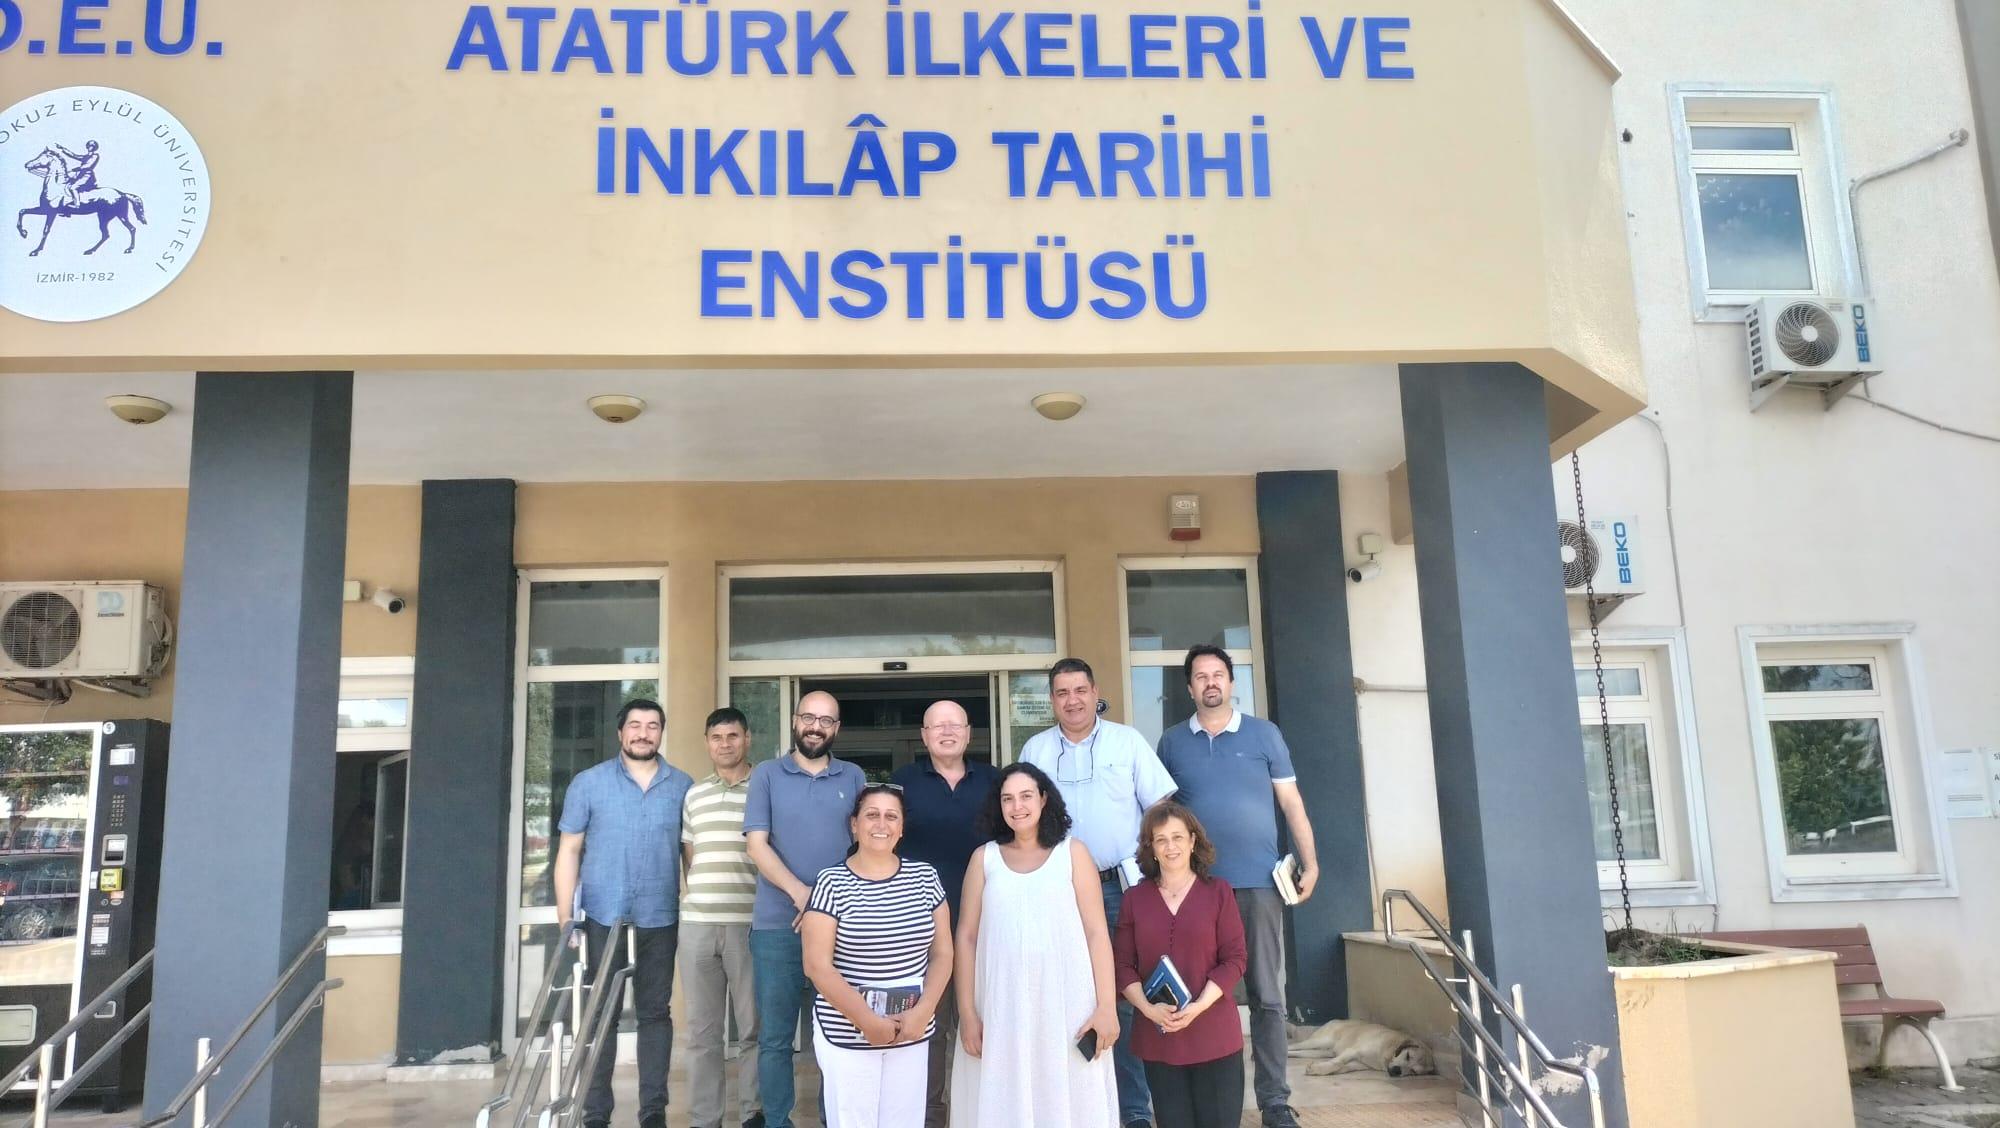 Fen Bilimleri Enstitüsü Müdürü Prof.Dr. Okan FISTIKOĞLU başkanlığında bir kurul enstitüler arası işbirliklerini görüşmek üzere Enstitümüze bir ziyarette bulunmuşlardır. Kendilerine teşekkür ederiz.